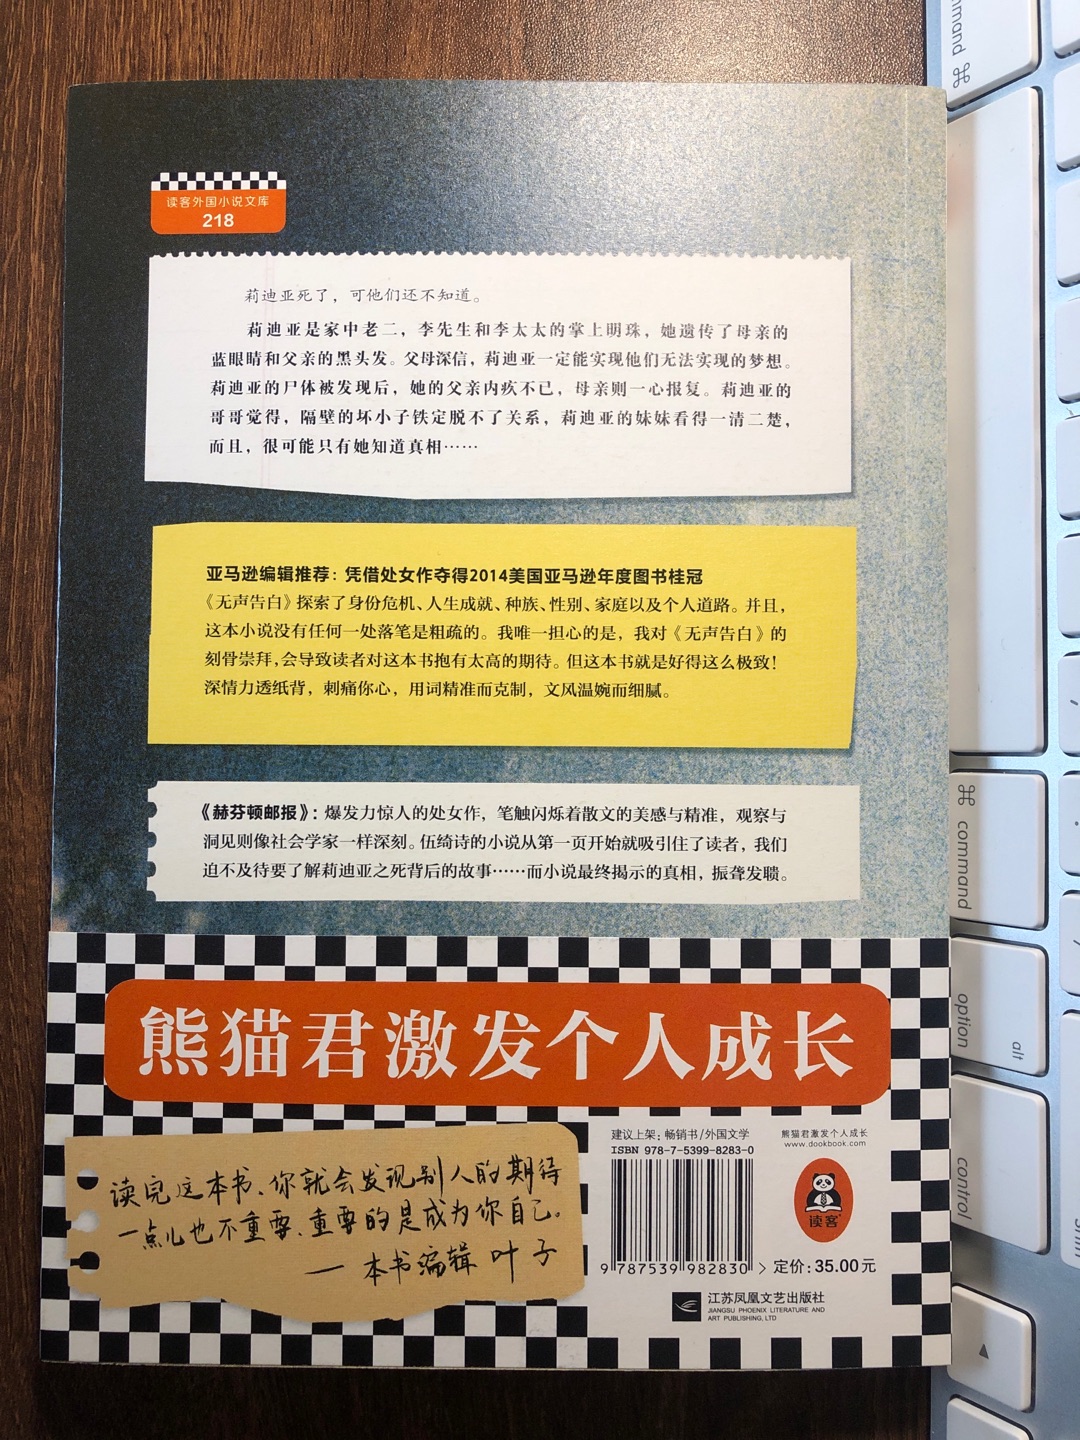 2014年底，美国~从当年出版的数万本图书中选出100本，年度最佳图书，并将第1名颁给了名不见经传的，80后华裔女作家伍绮诗的处女作品——《无声告白》。